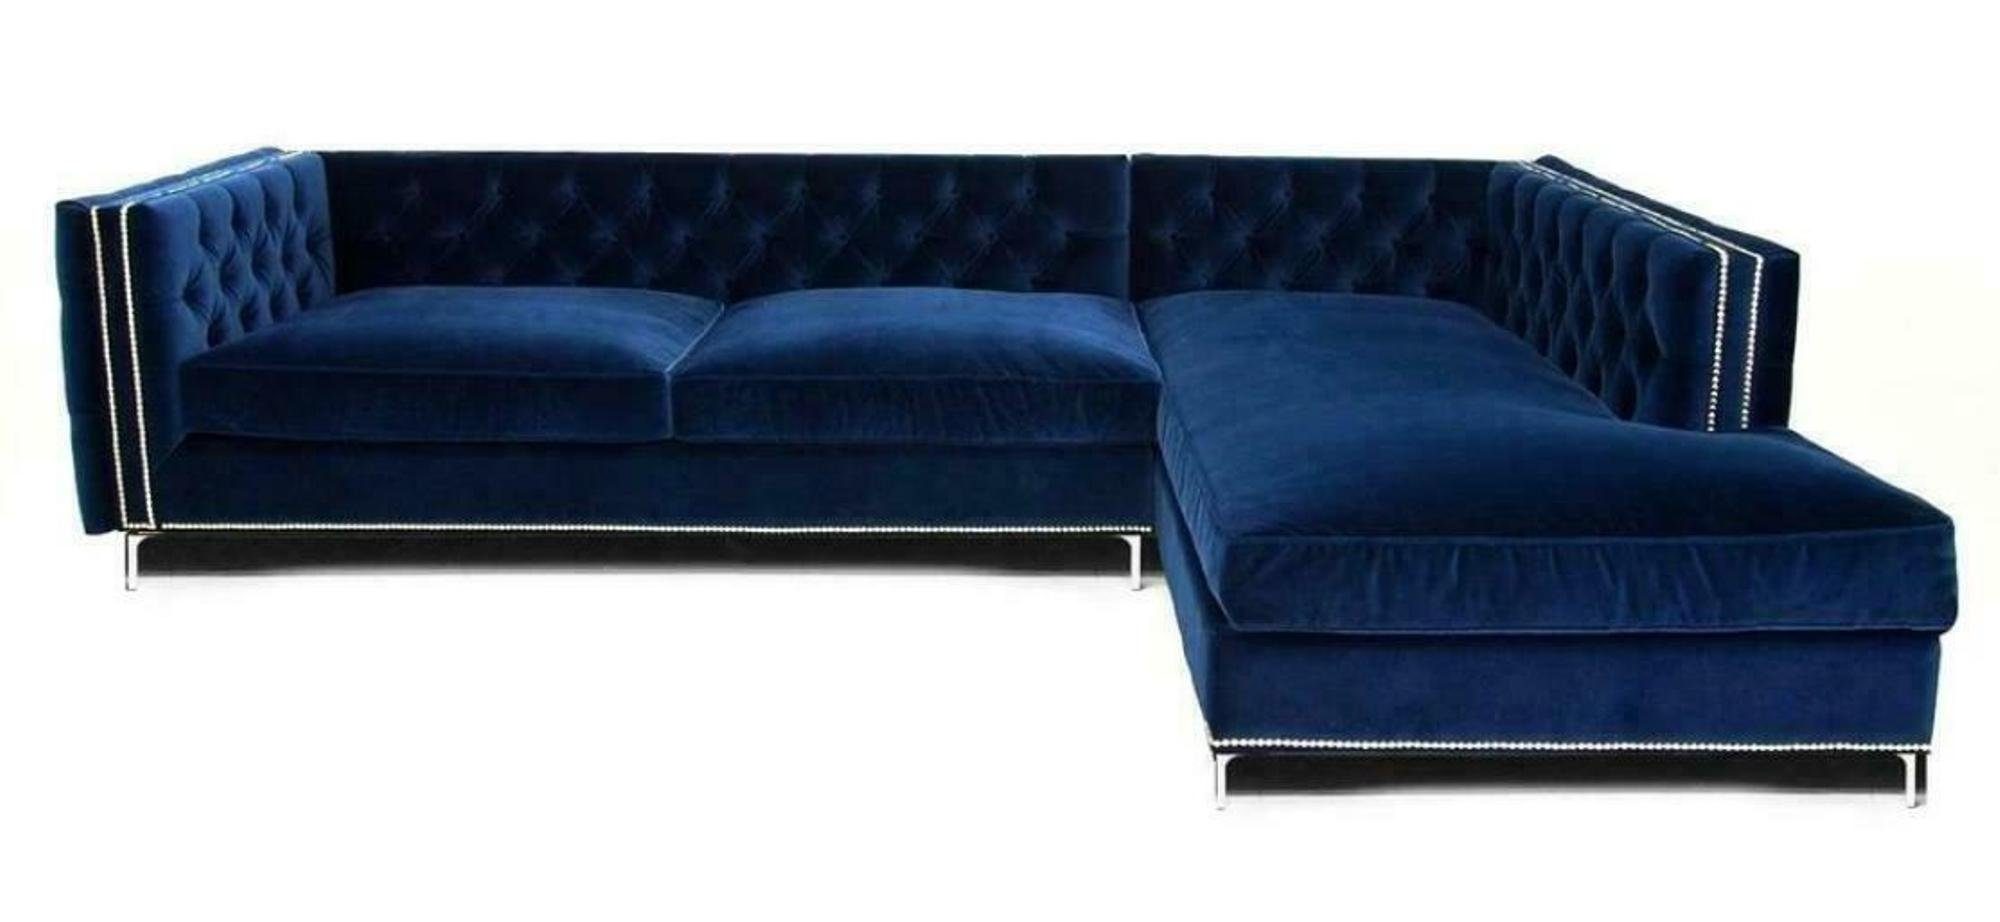 JVmoebel Ecksofa Luxriöse Blaue L-Form Couch modernes Ecksofa Polstermöbel Neu, Made in Europe